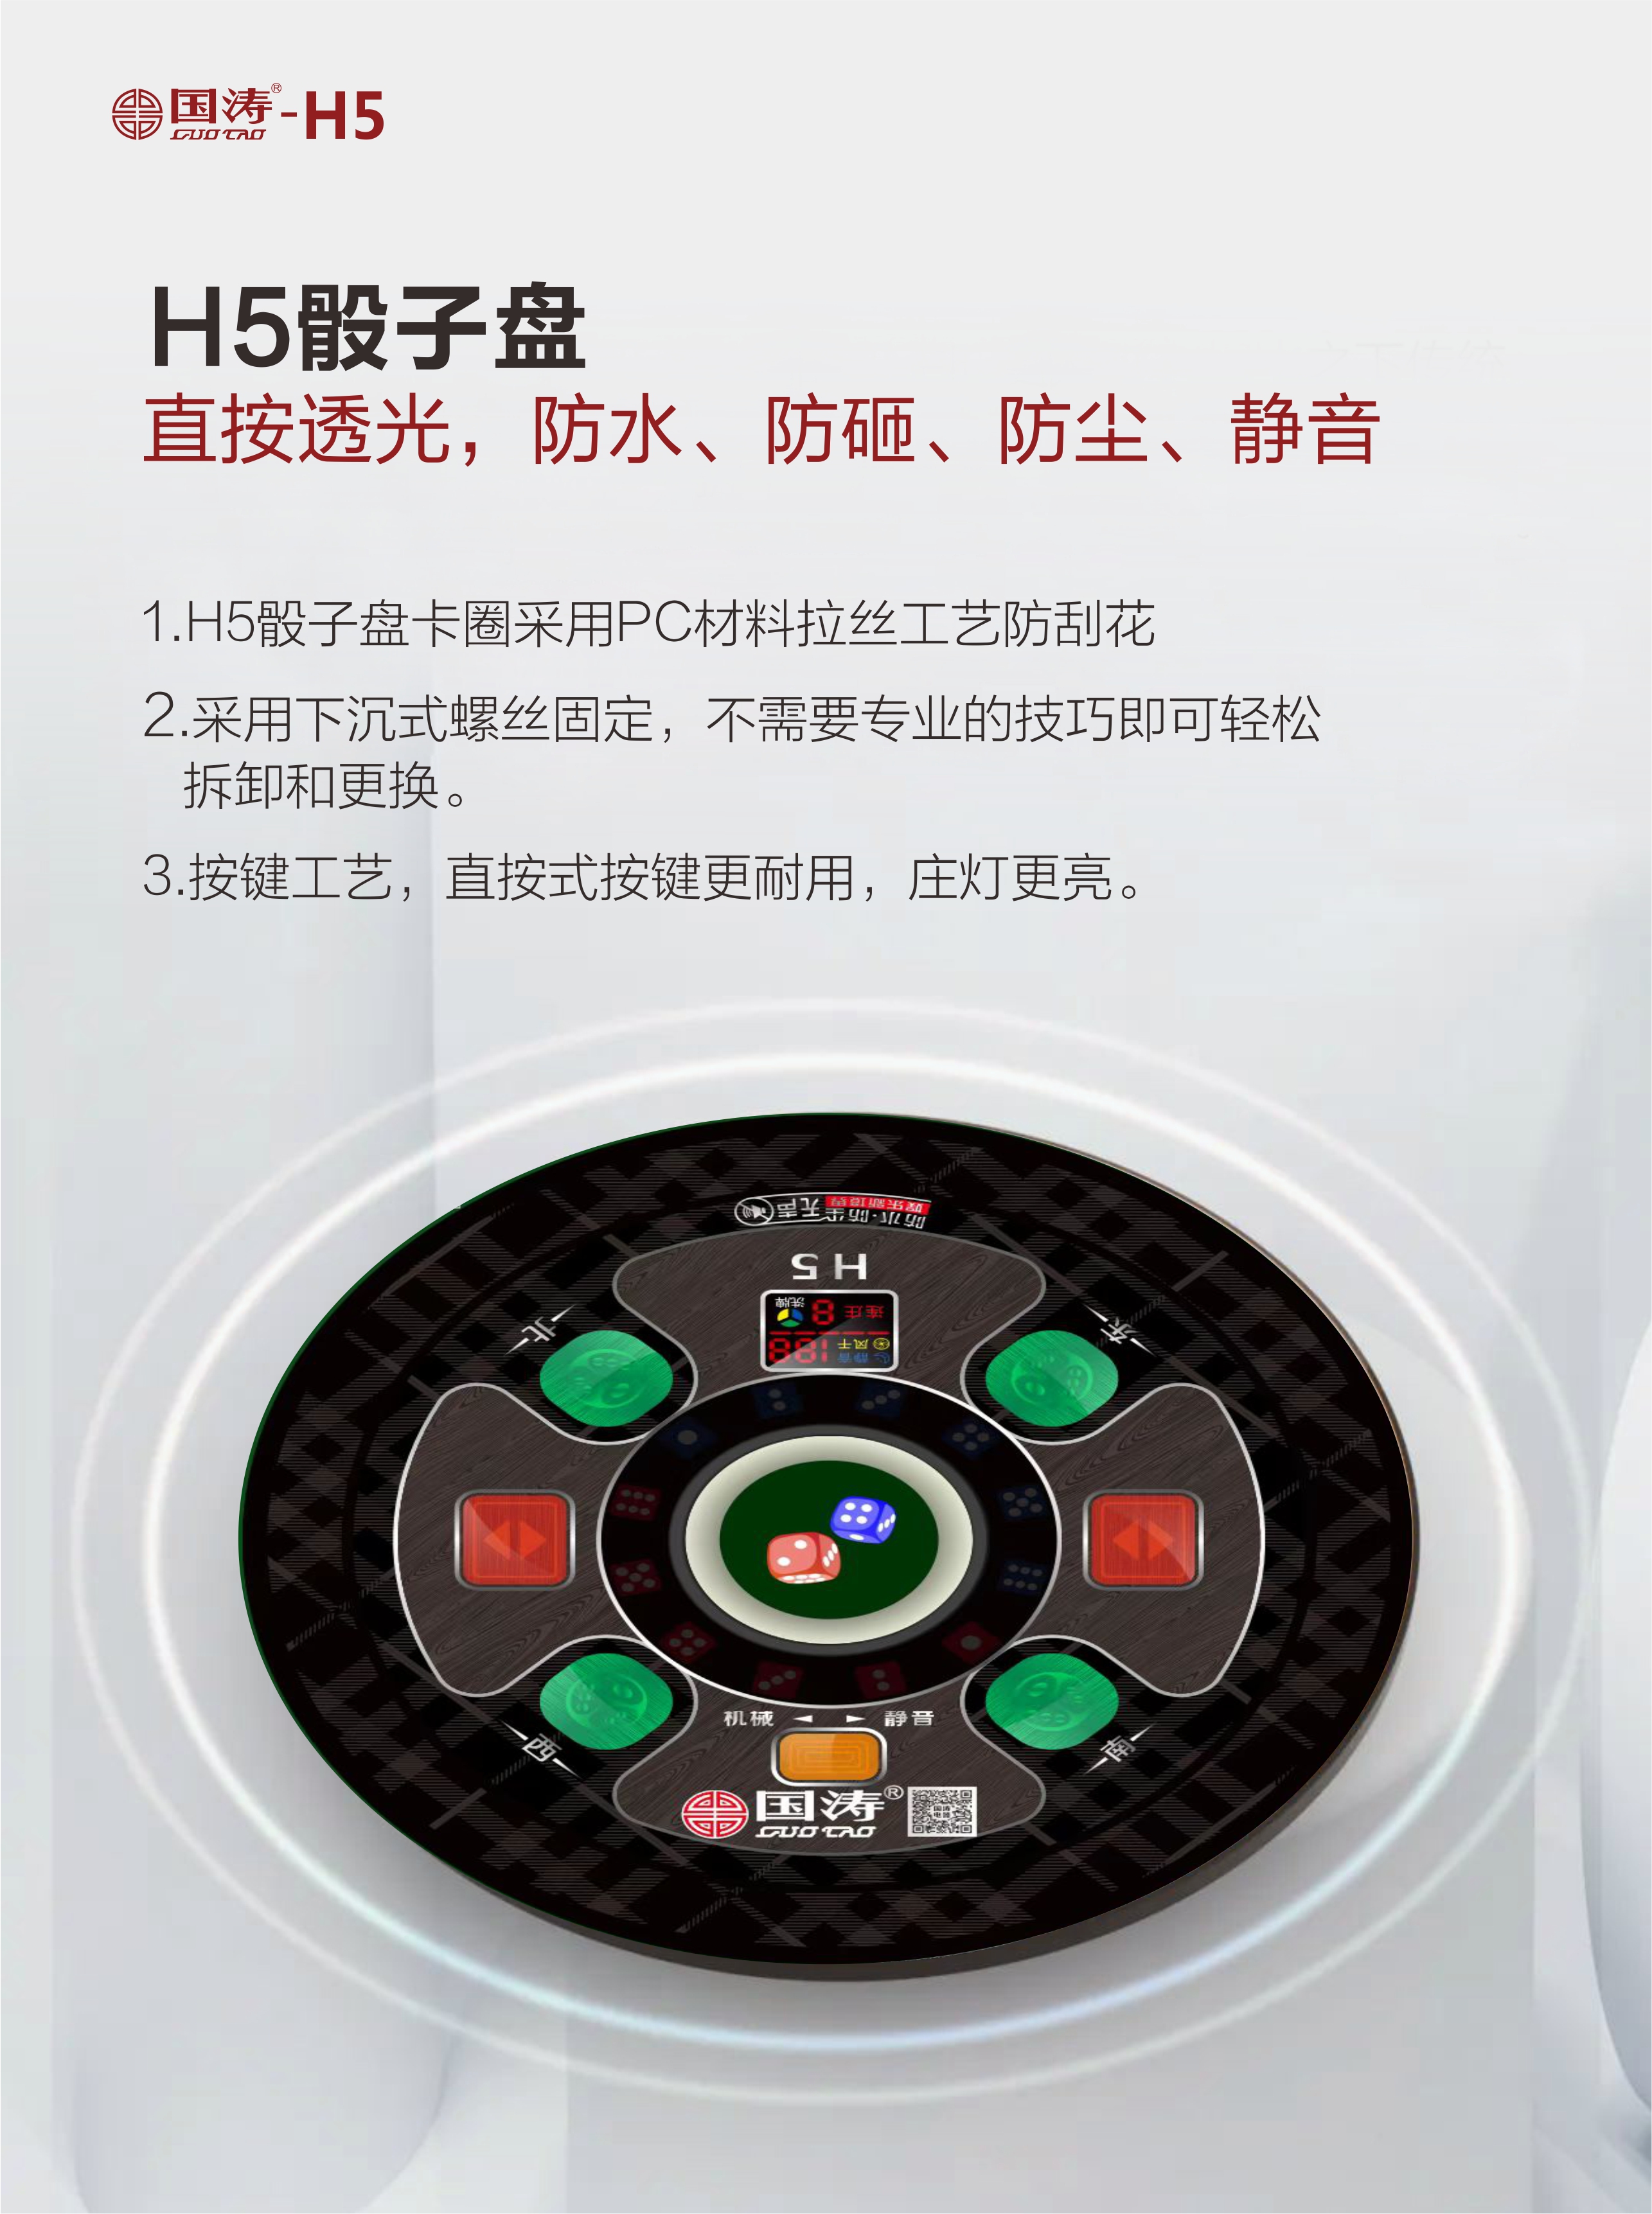 H5-淘宝09.jpg